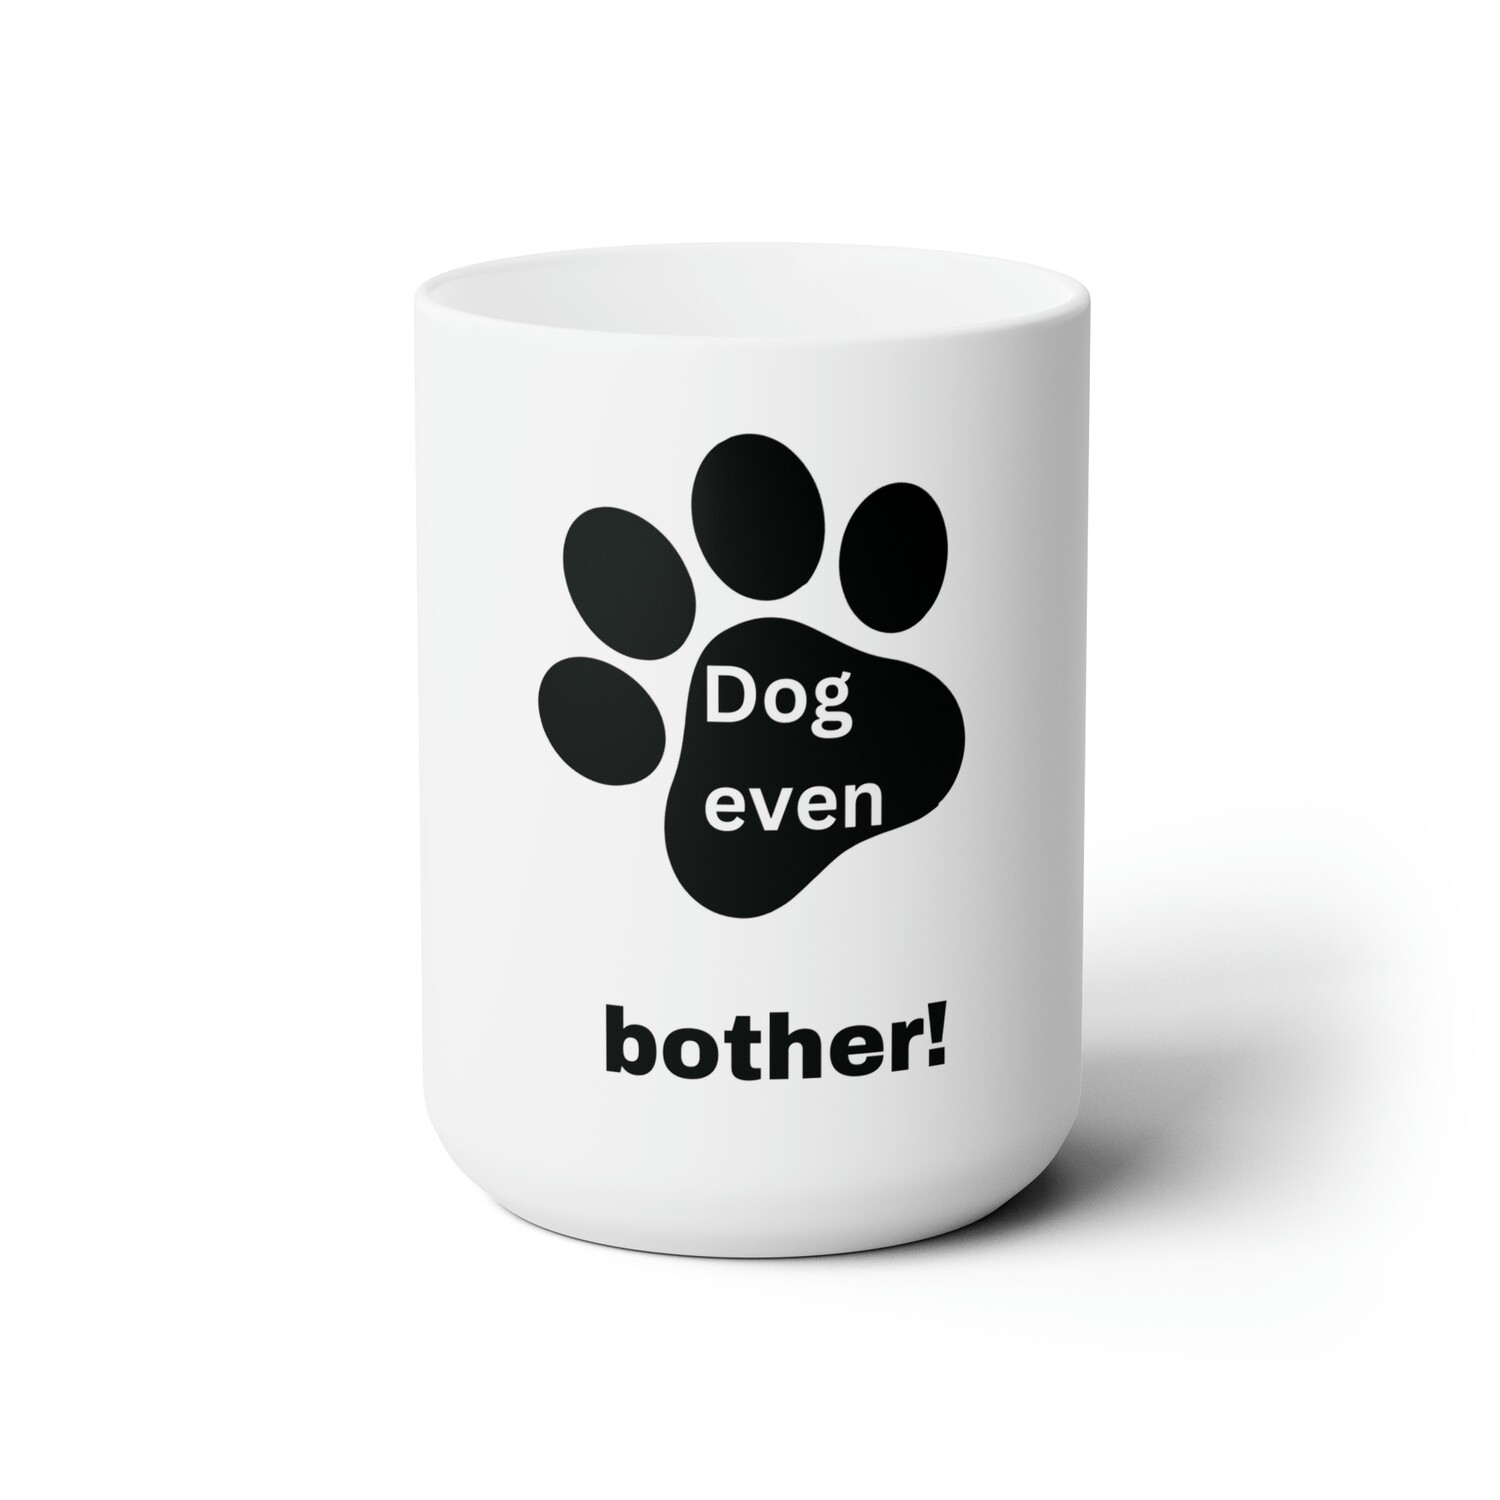 Dog Coffee Mug "Dog even bother!"